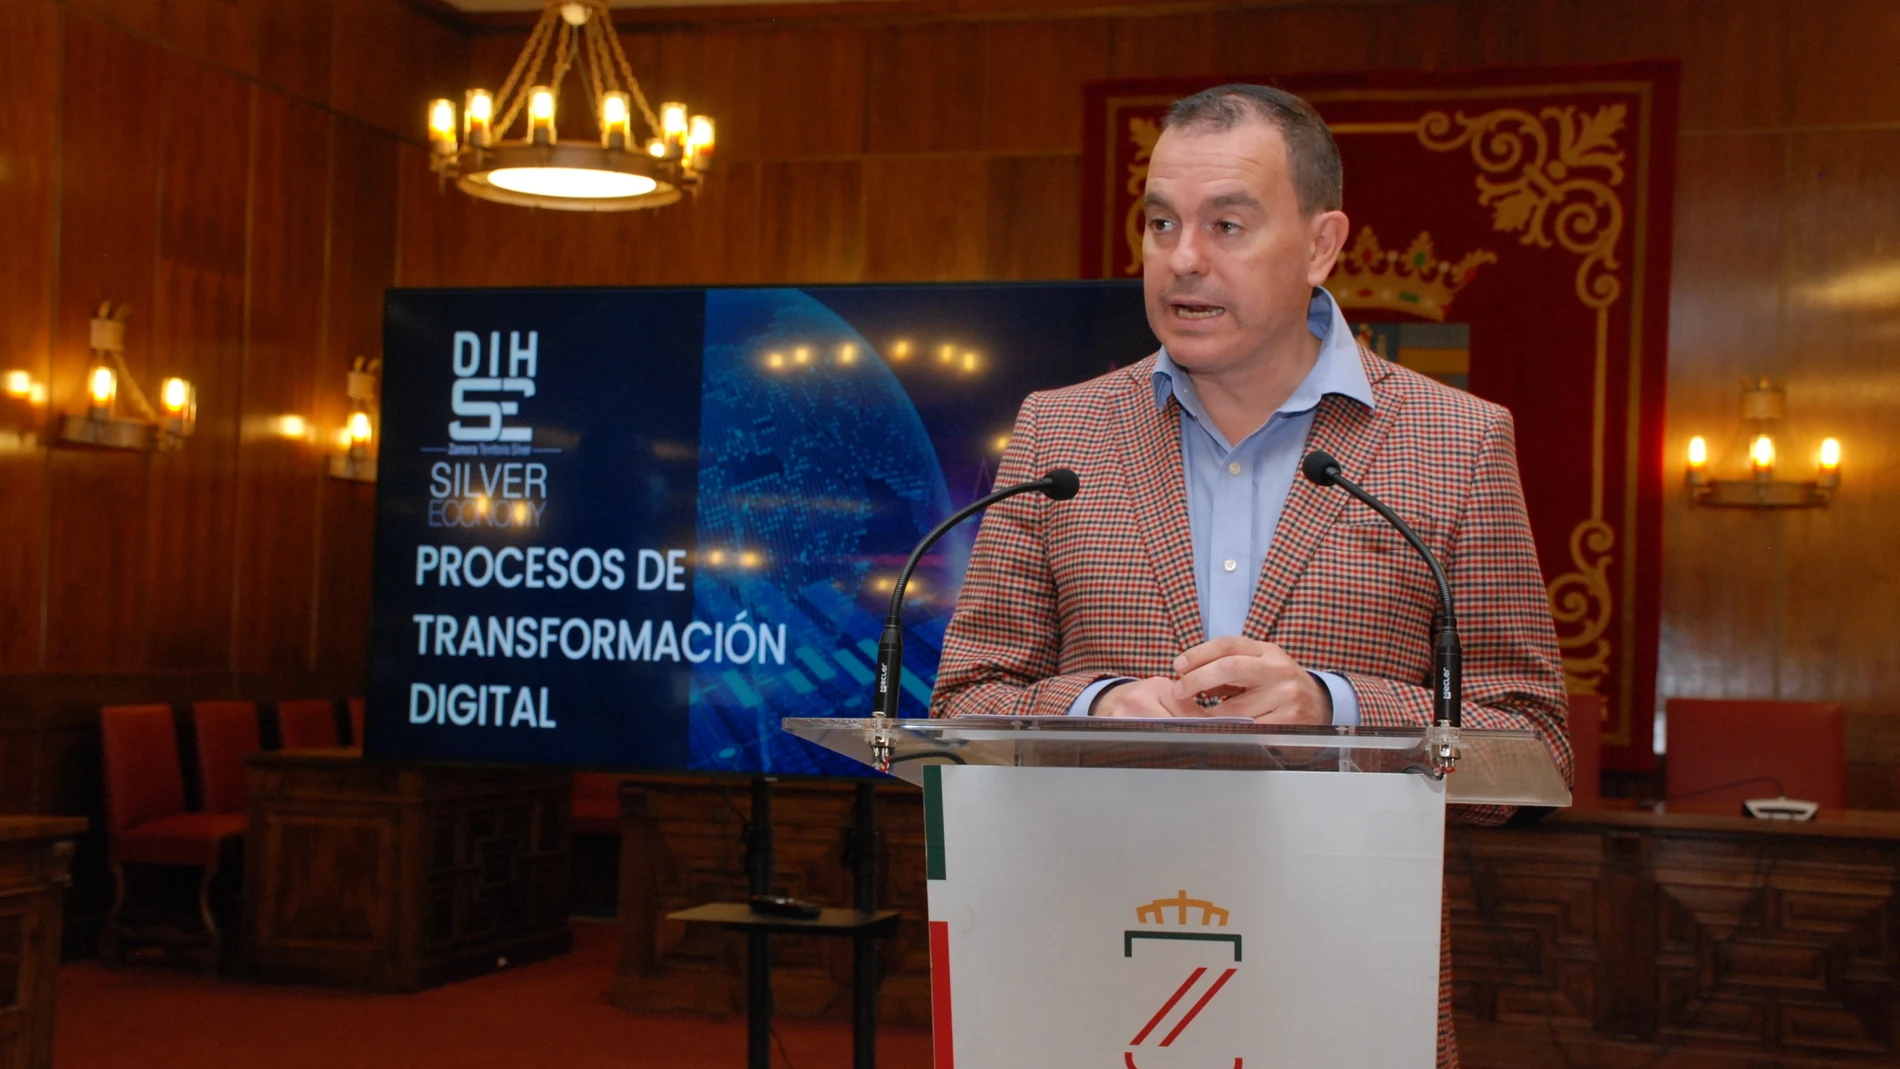 El presidente de la Diputación de Zamora, Francisco José Requejo, presenta el proyecto